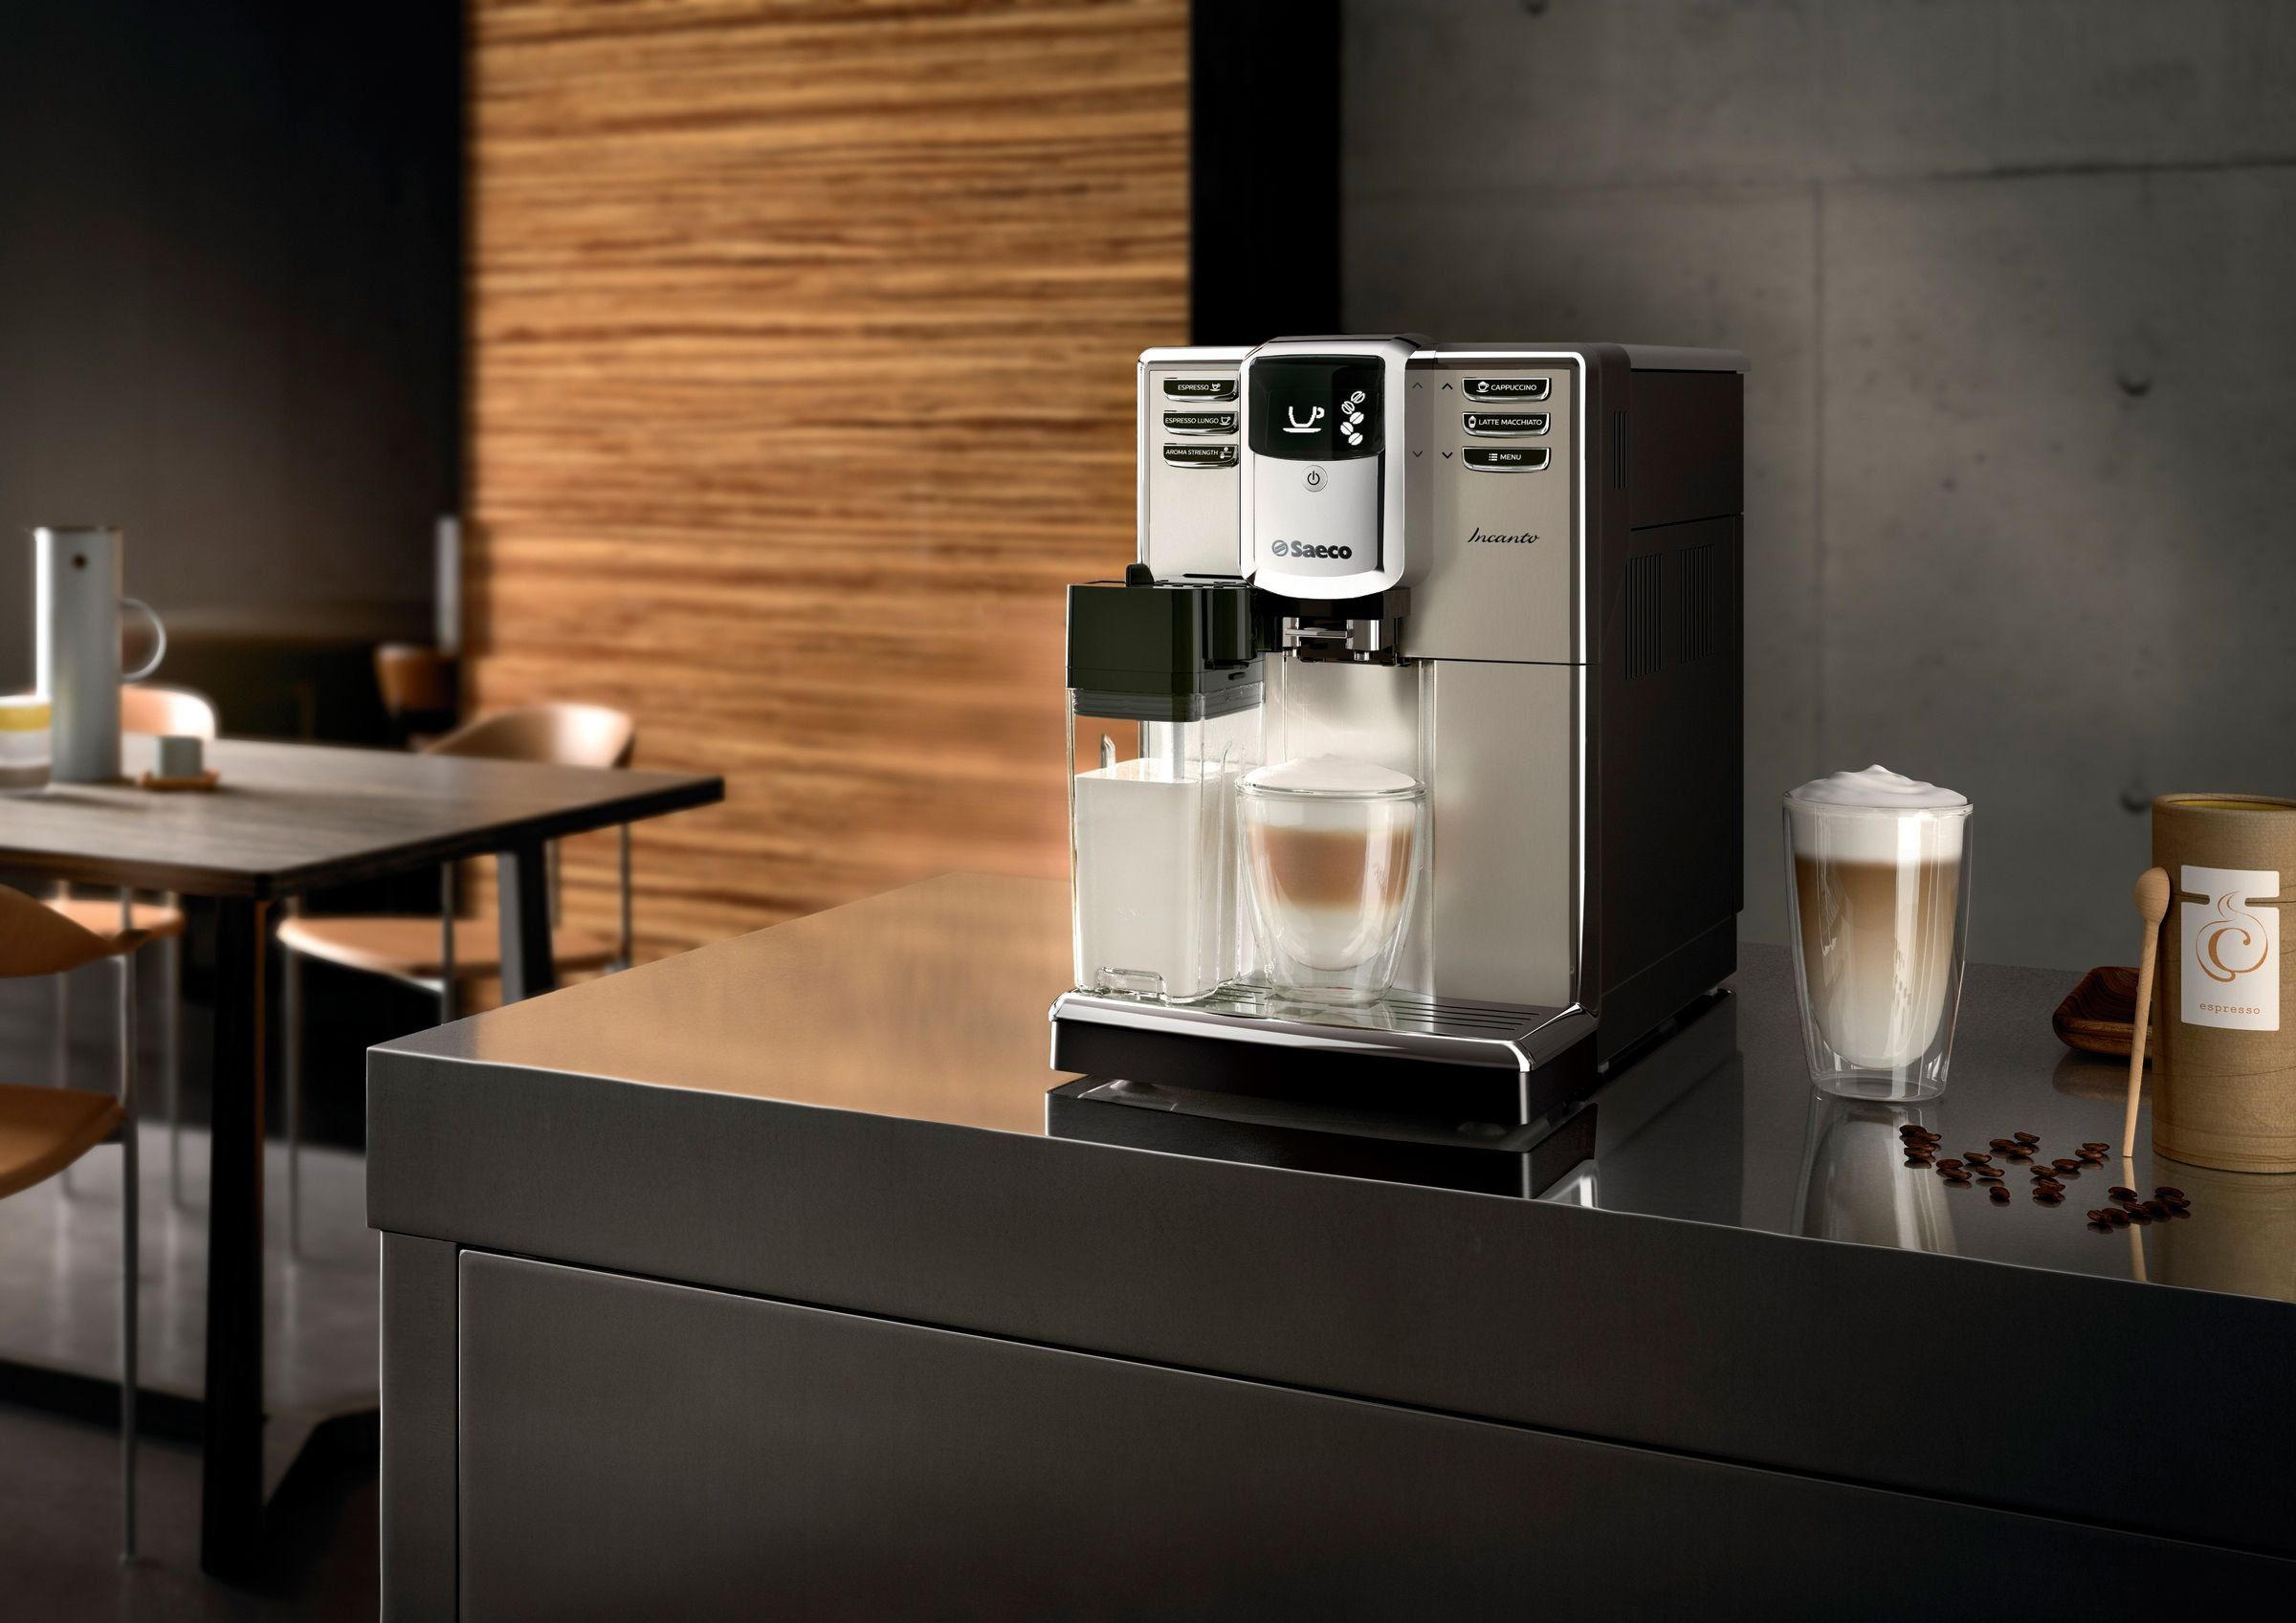 Parhaat Saeco-espressokoneet kotiin ja toimistoon 2020